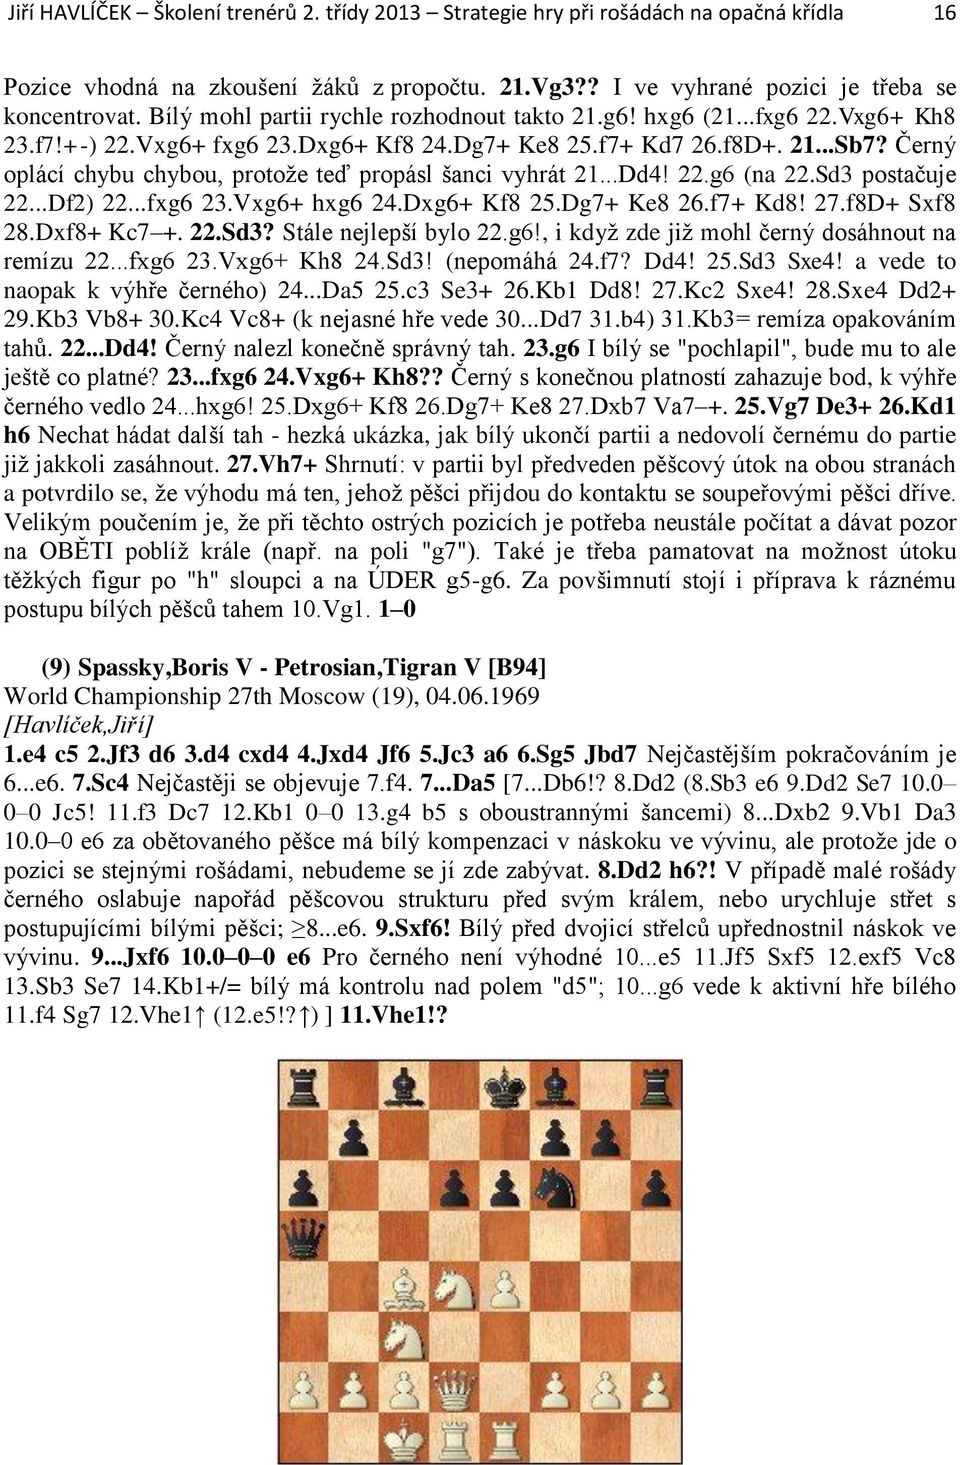 Černý oplácí chybu chybou, protože teď propásl šanci vyhrát 21...Dd4! 22.g6 (na 22.Sd3 postačuje 22...Df2) 22...fxg6 23.Vxg6+ hxg6 24.Dxg6+ Kf8 25.Dg7+ Ke8 26.f7+ Kd8! 27.f8D+ Sxf8 28.Dxf8+ Kc7 +. 22.Sd3? Stále nejlepší bylo 22.